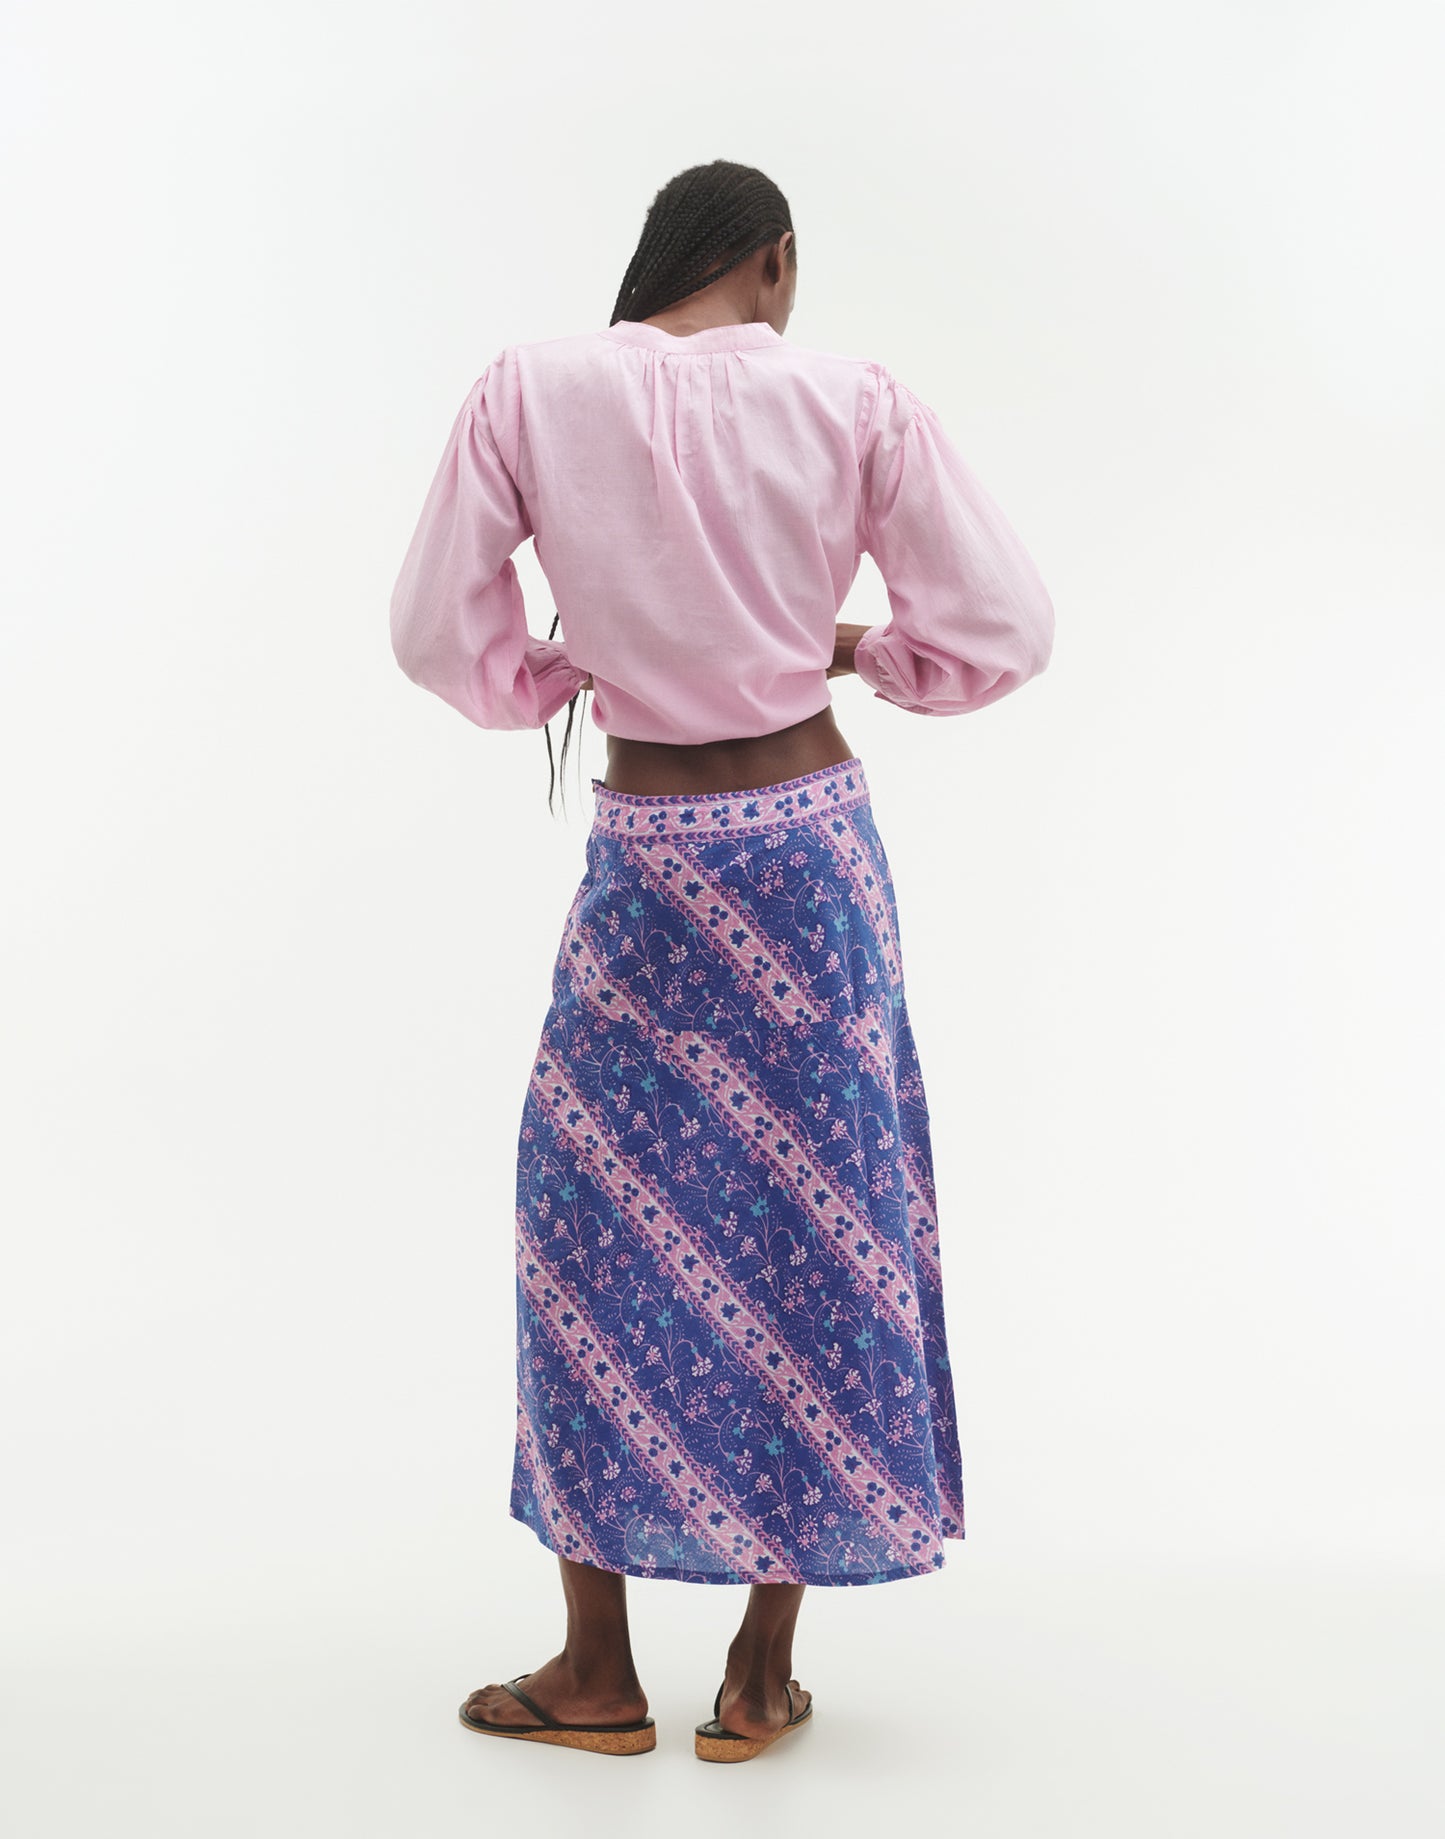 Camargue skirt